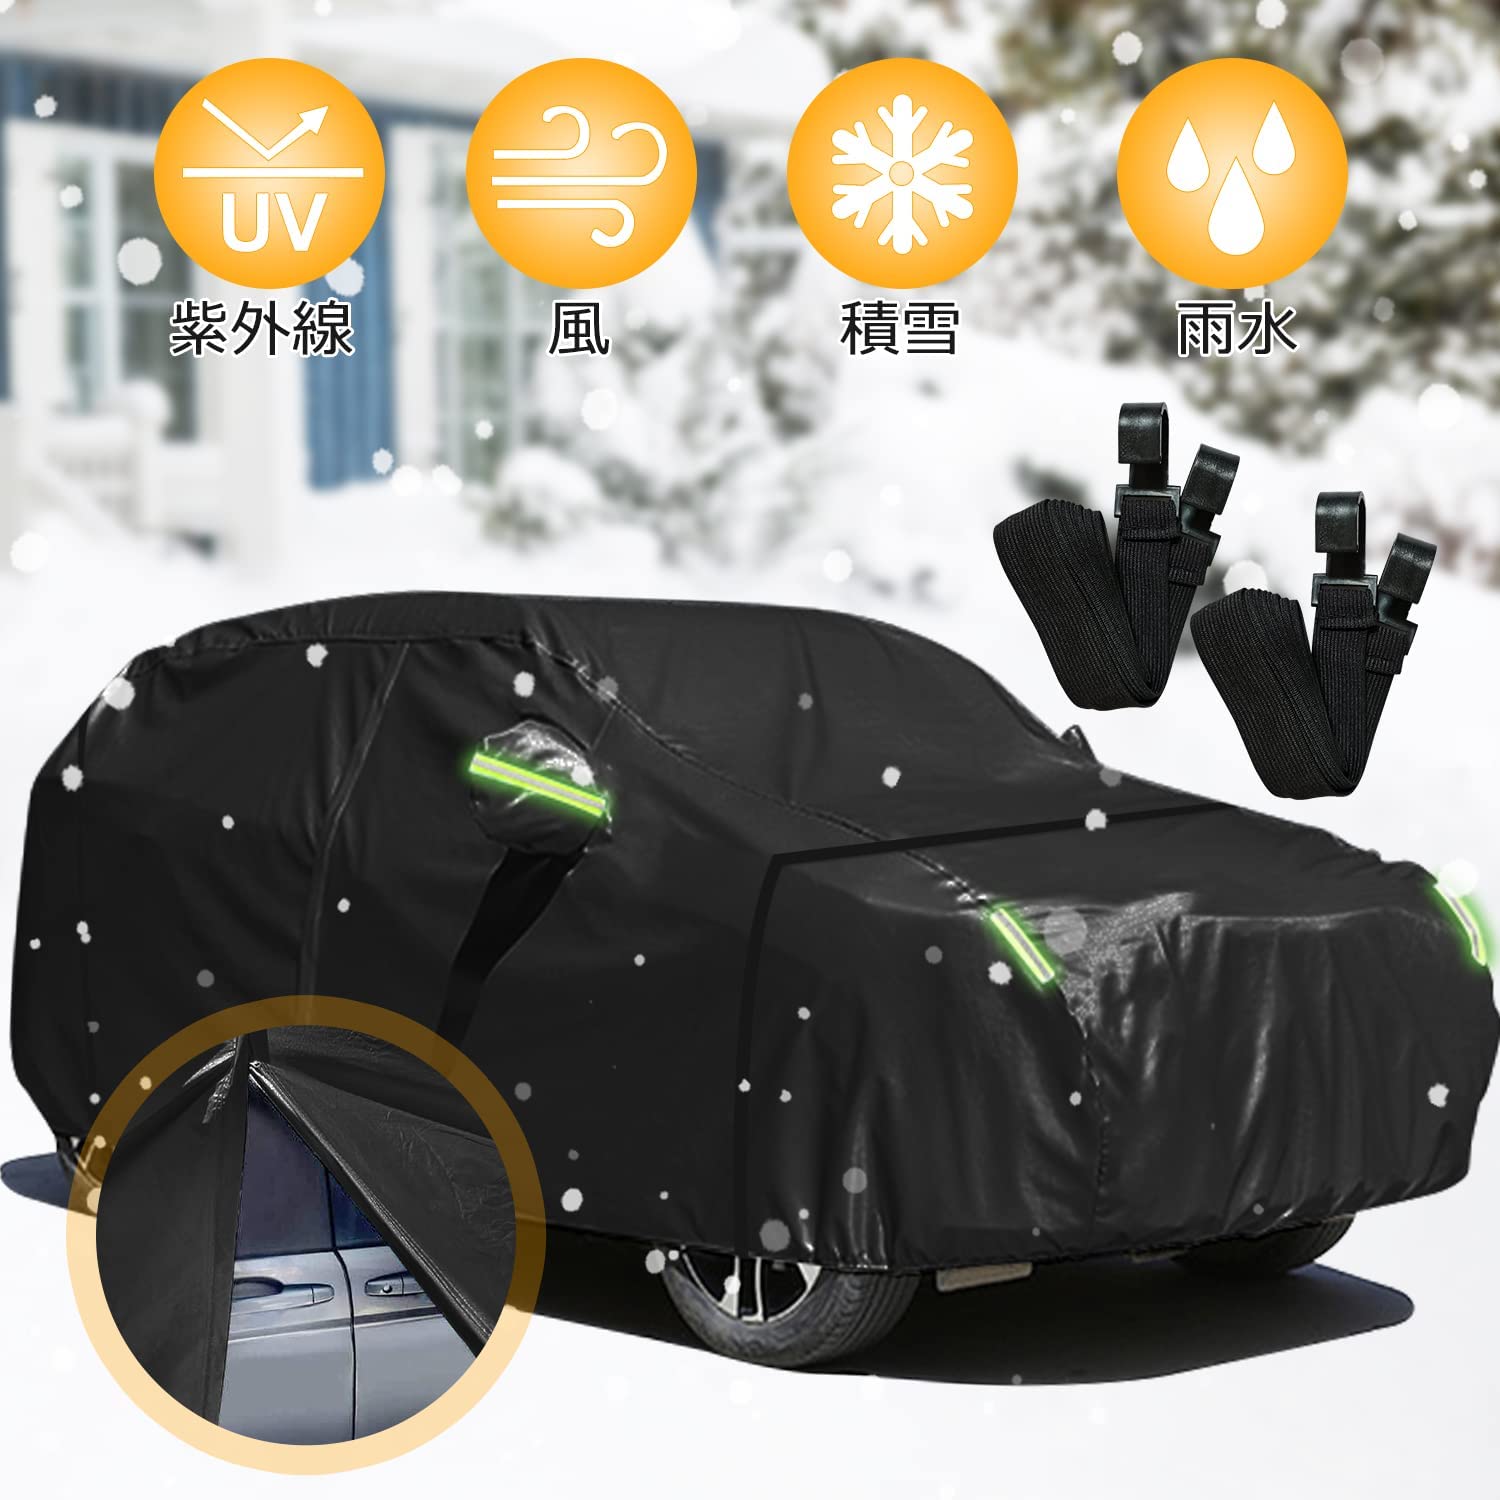 車 カバー 車体 カーカバー 防水 雪 UV日焼け セダン対応 防水 収納袋